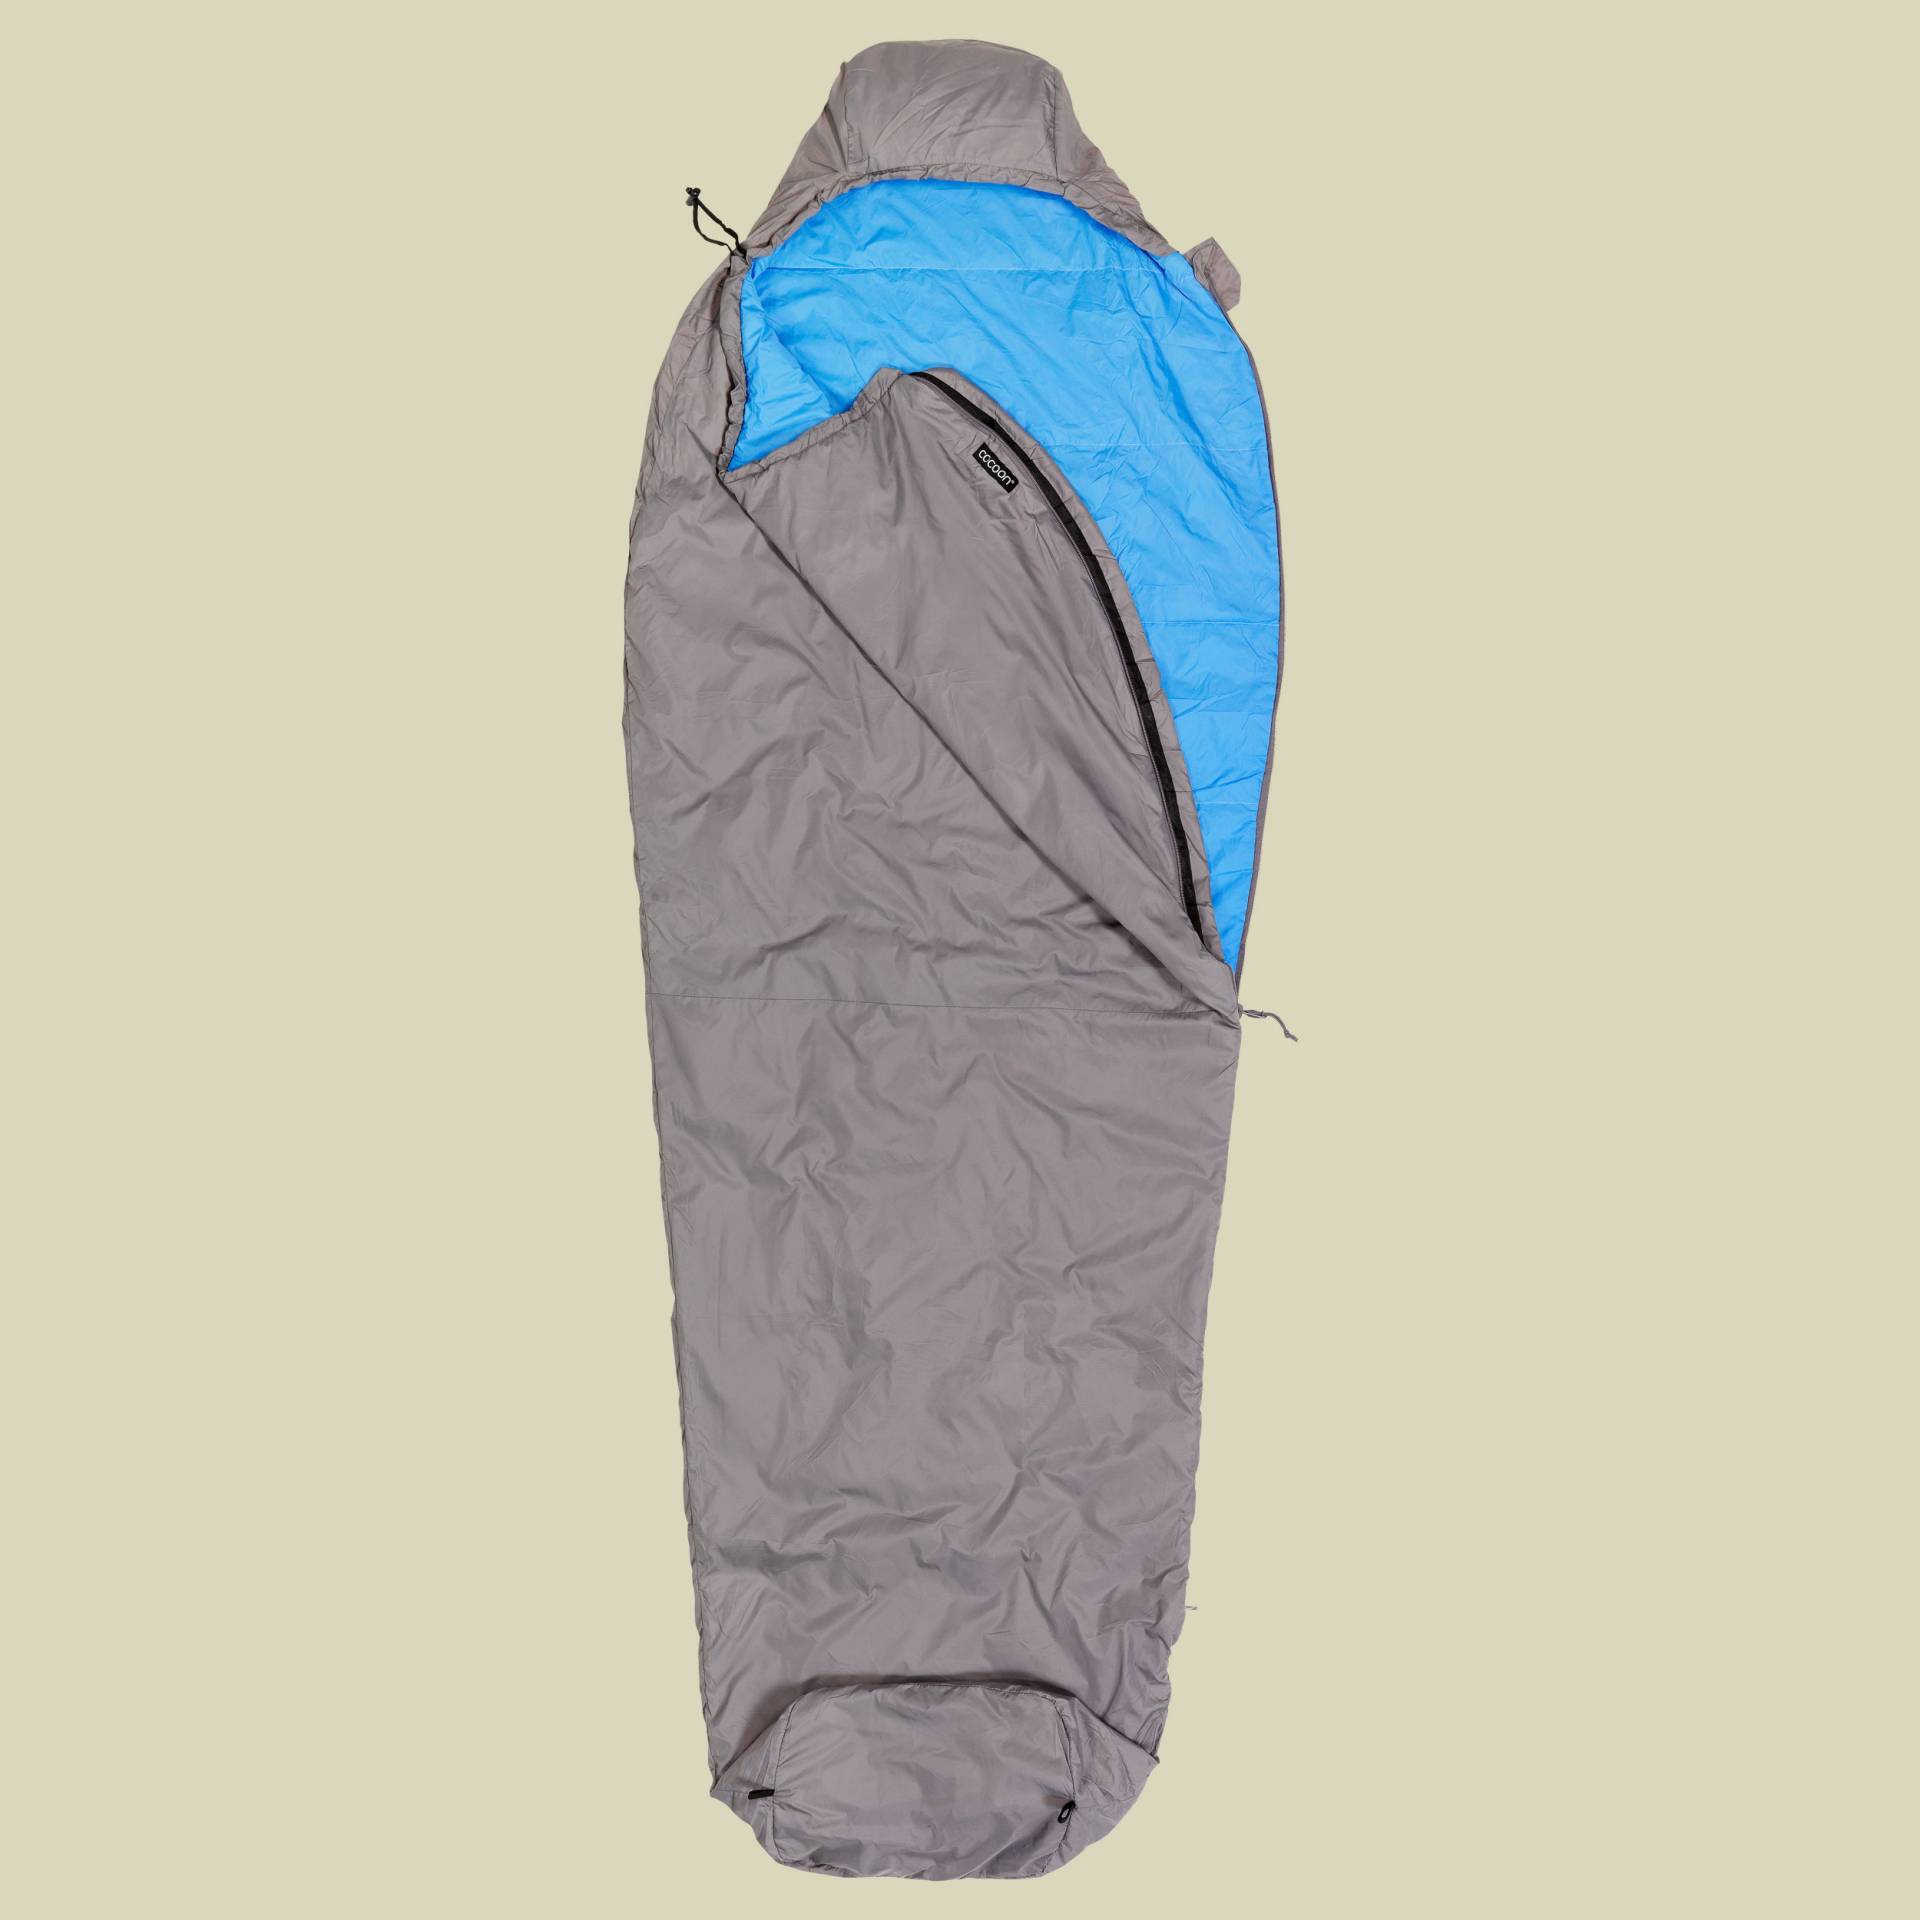 Mountain Wanderer bis Körpergröße 185 cm (regular) Farbe volcano grey/light blue von Cocoon